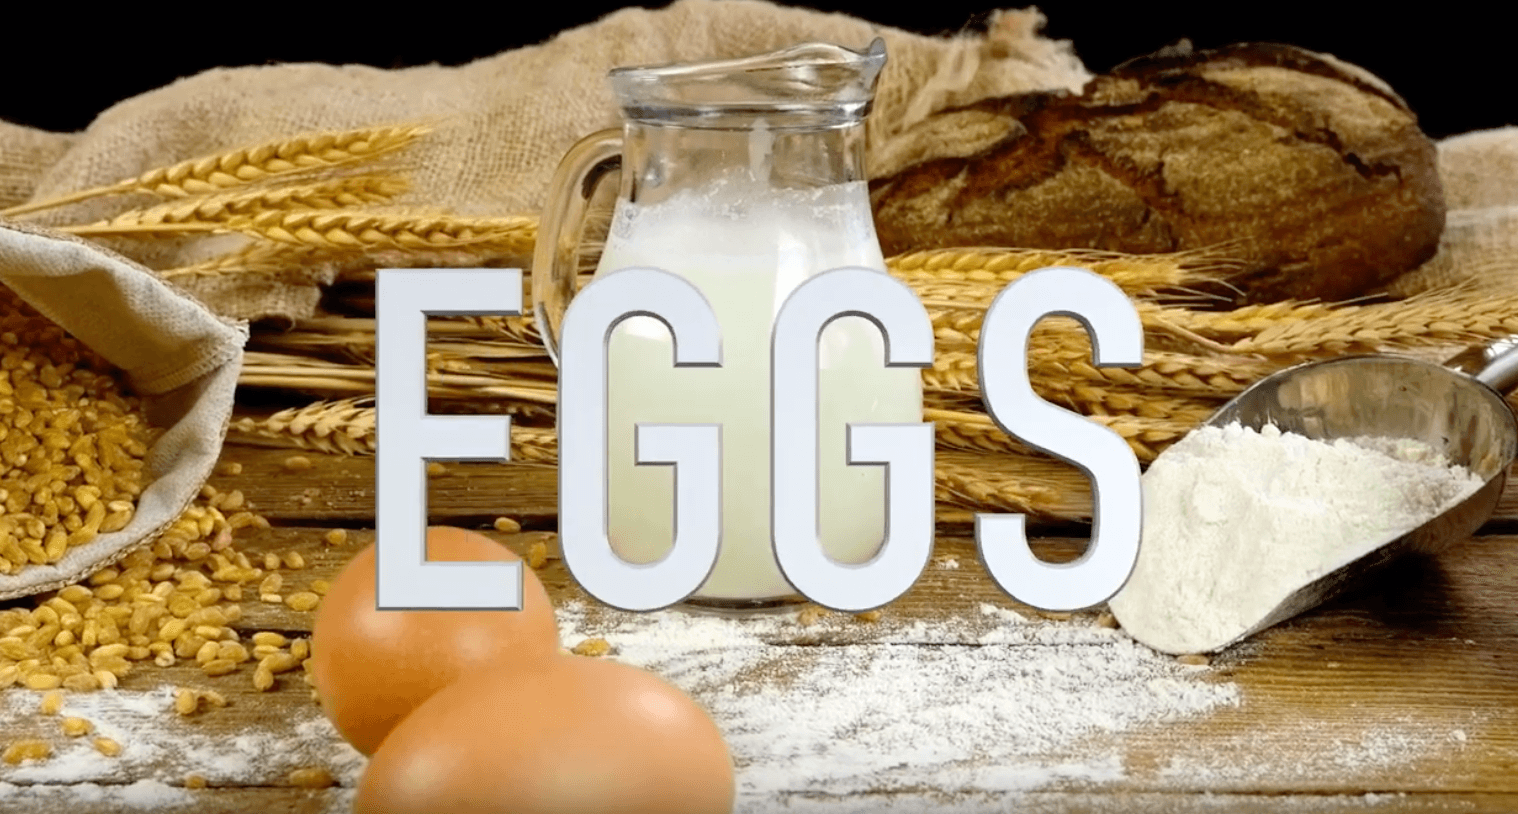 Easy Vegan Hack 2 for Veganuary - Egg Substitute #1